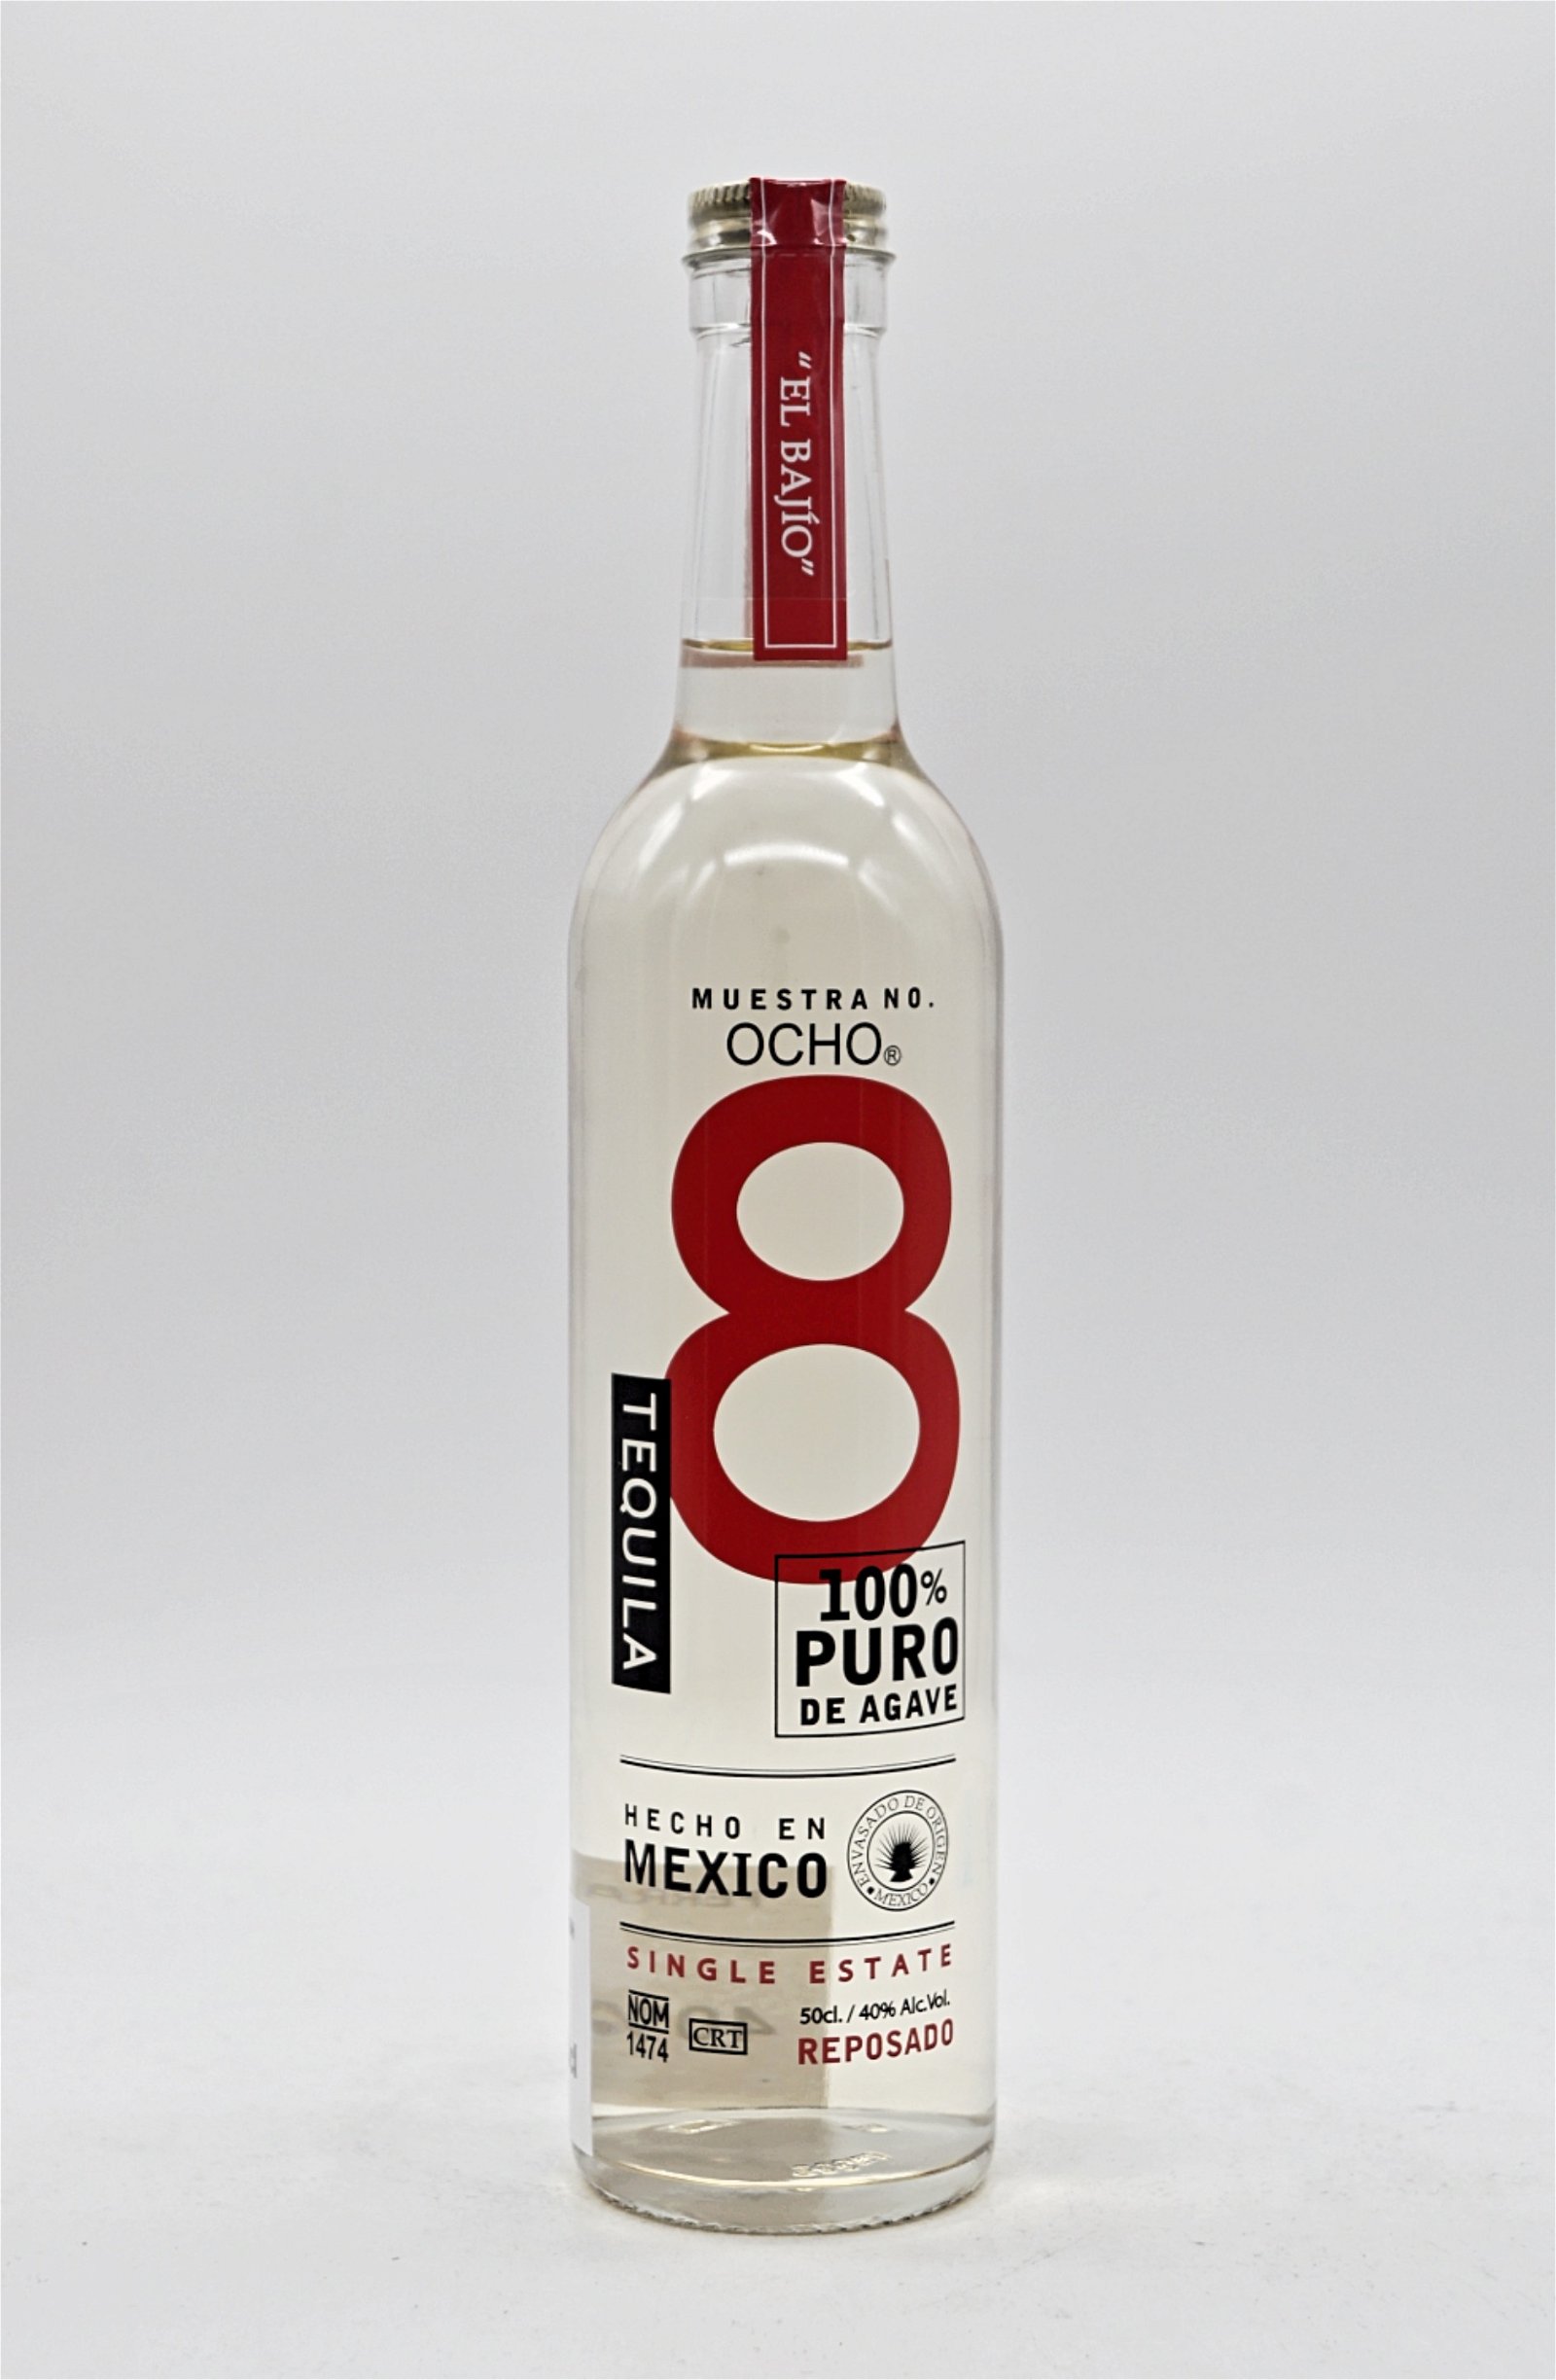 Ocho Tequila Reposado "El Bajio" Single Estate